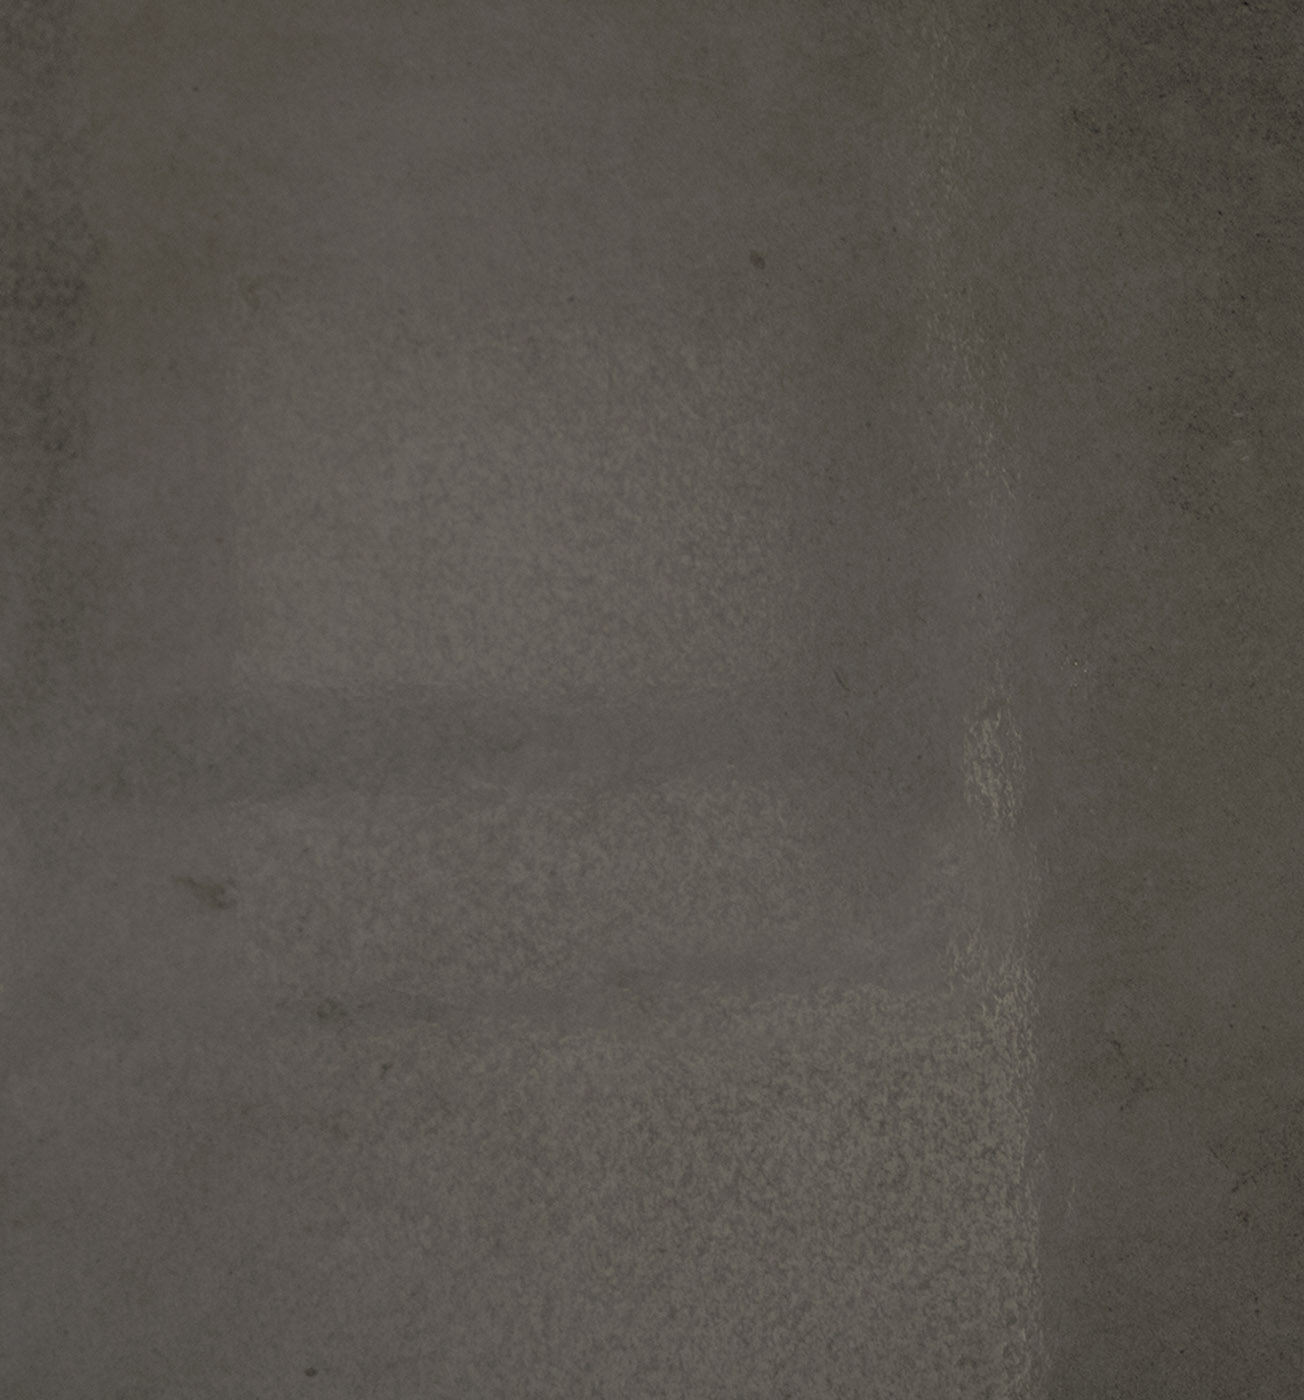 Bodenfliese,Wandfliese Terratinta Betontech Mud Lappato Mud TTBT0460LP gelaeppt 60x60cm rektifiziert 10,5mm